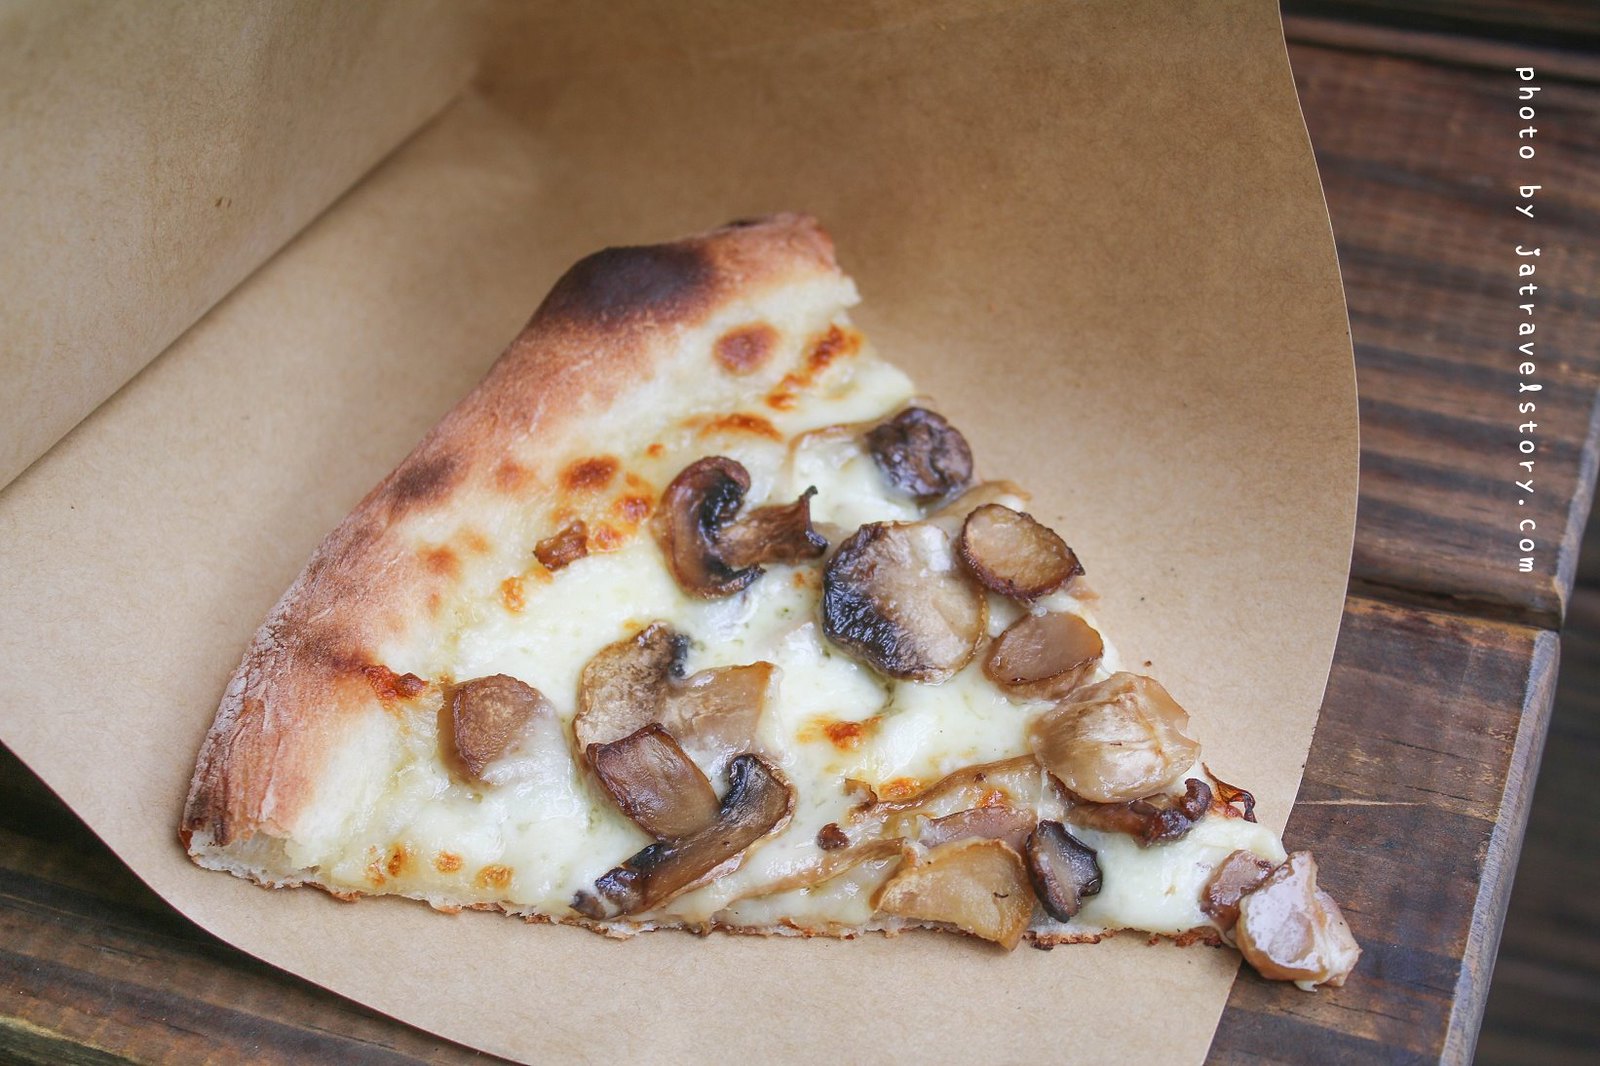 Pizza Guild 比薩幫 單片比薩45元起,一個人就能品嘗多口味比薩【捷運公館】公館美食/台大美食 @J&amp;A的旅行